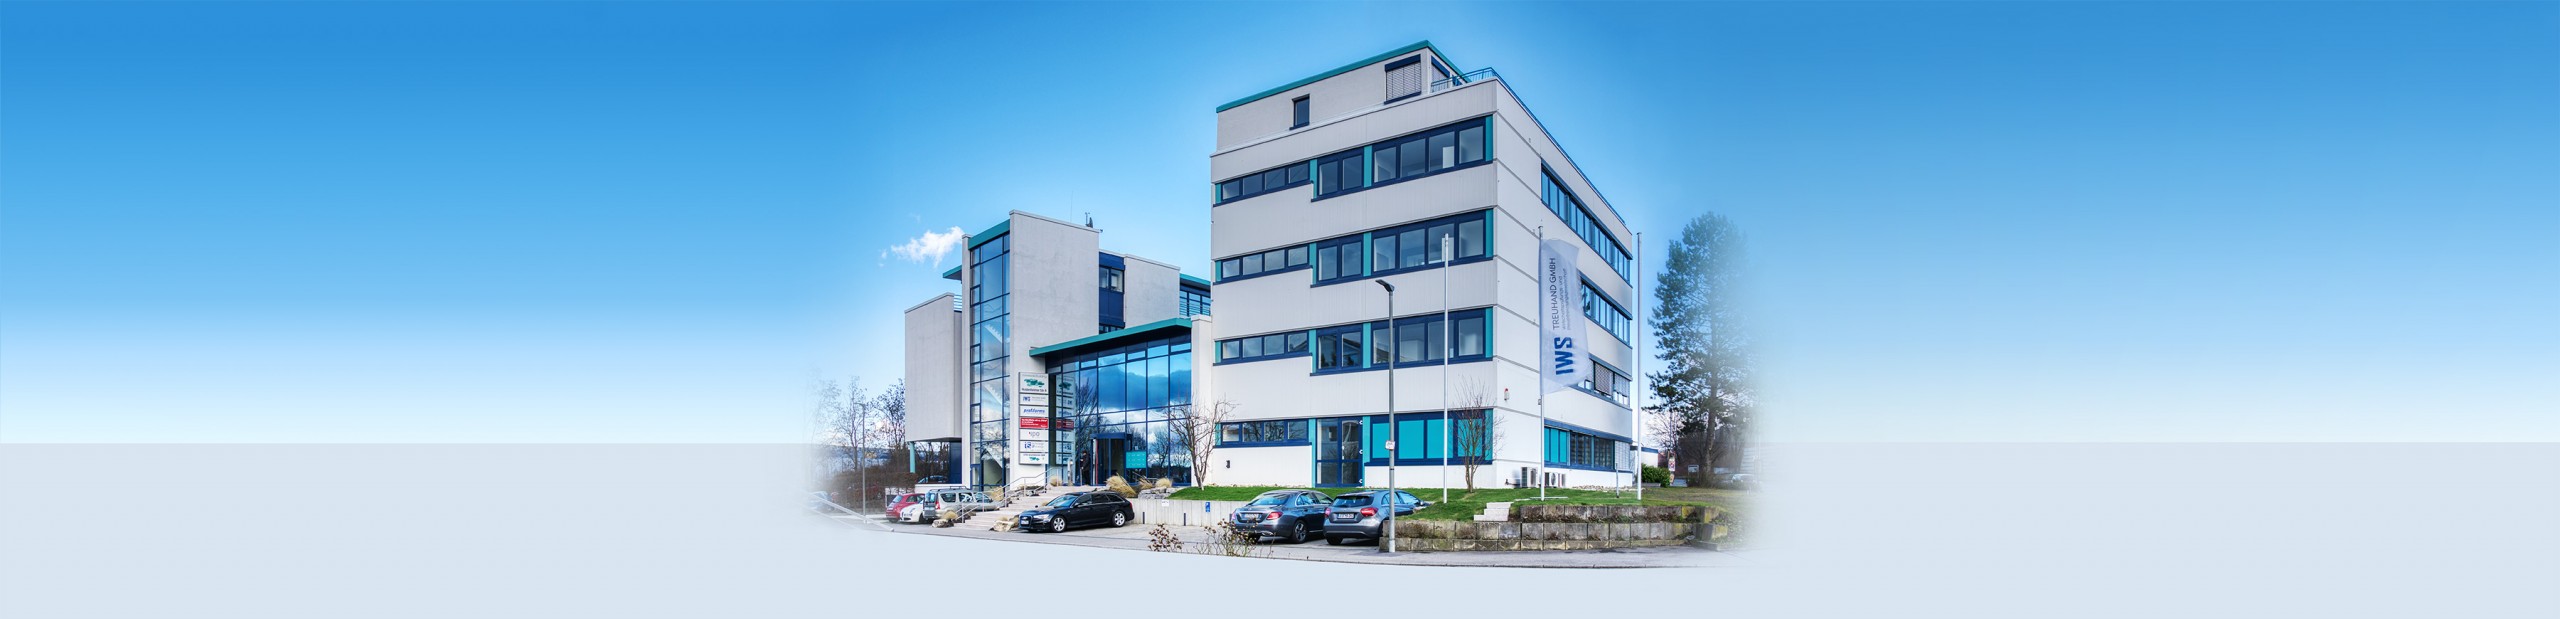 IWS Treuhand GmbH - Ihr Wirtschaftsprüfer und Steuerberater in Leonberg